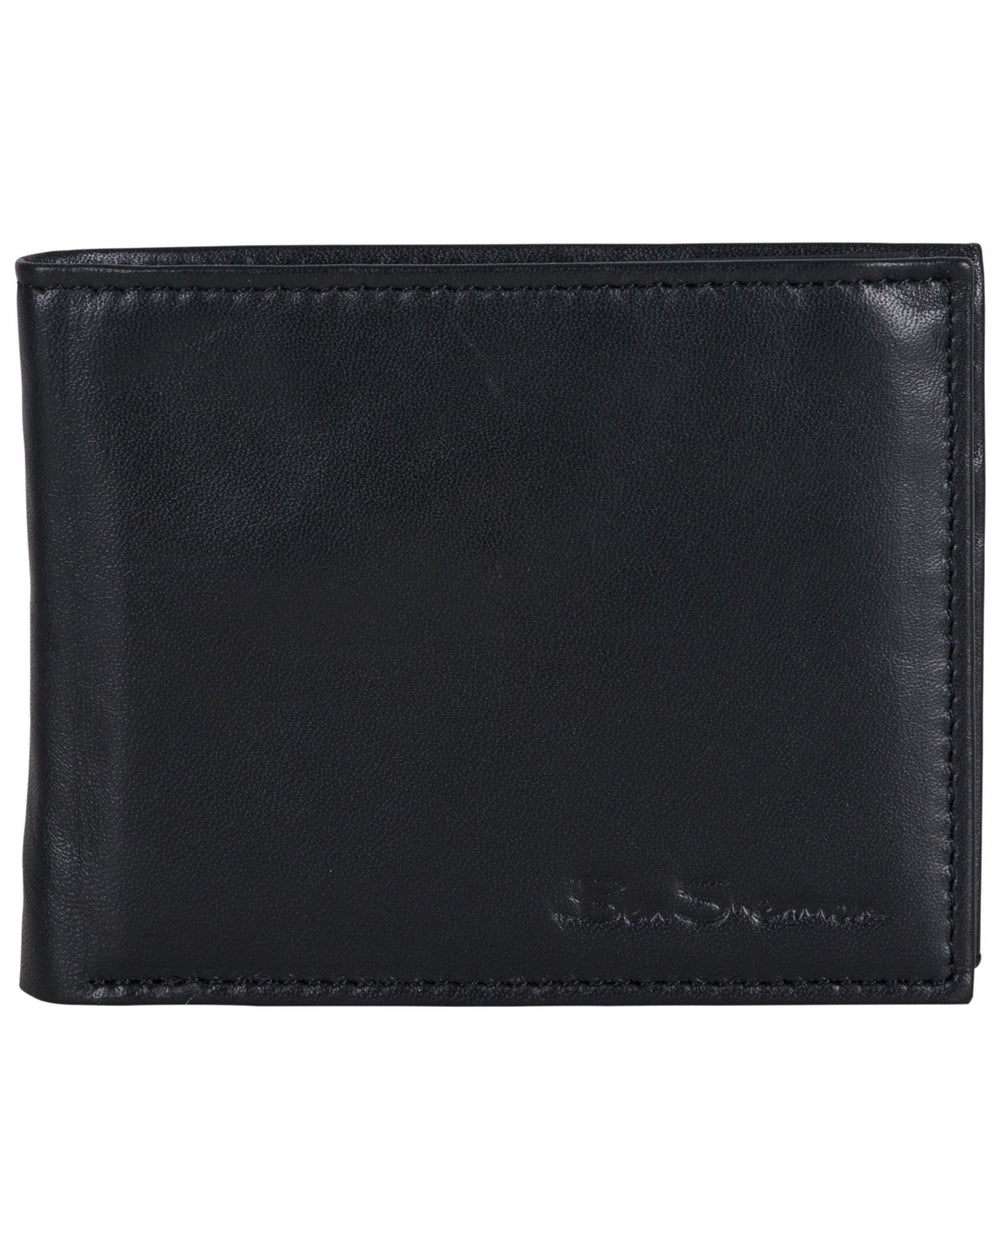 Kensington Sheepskin Leather Bifold Five-Pocket Wallet